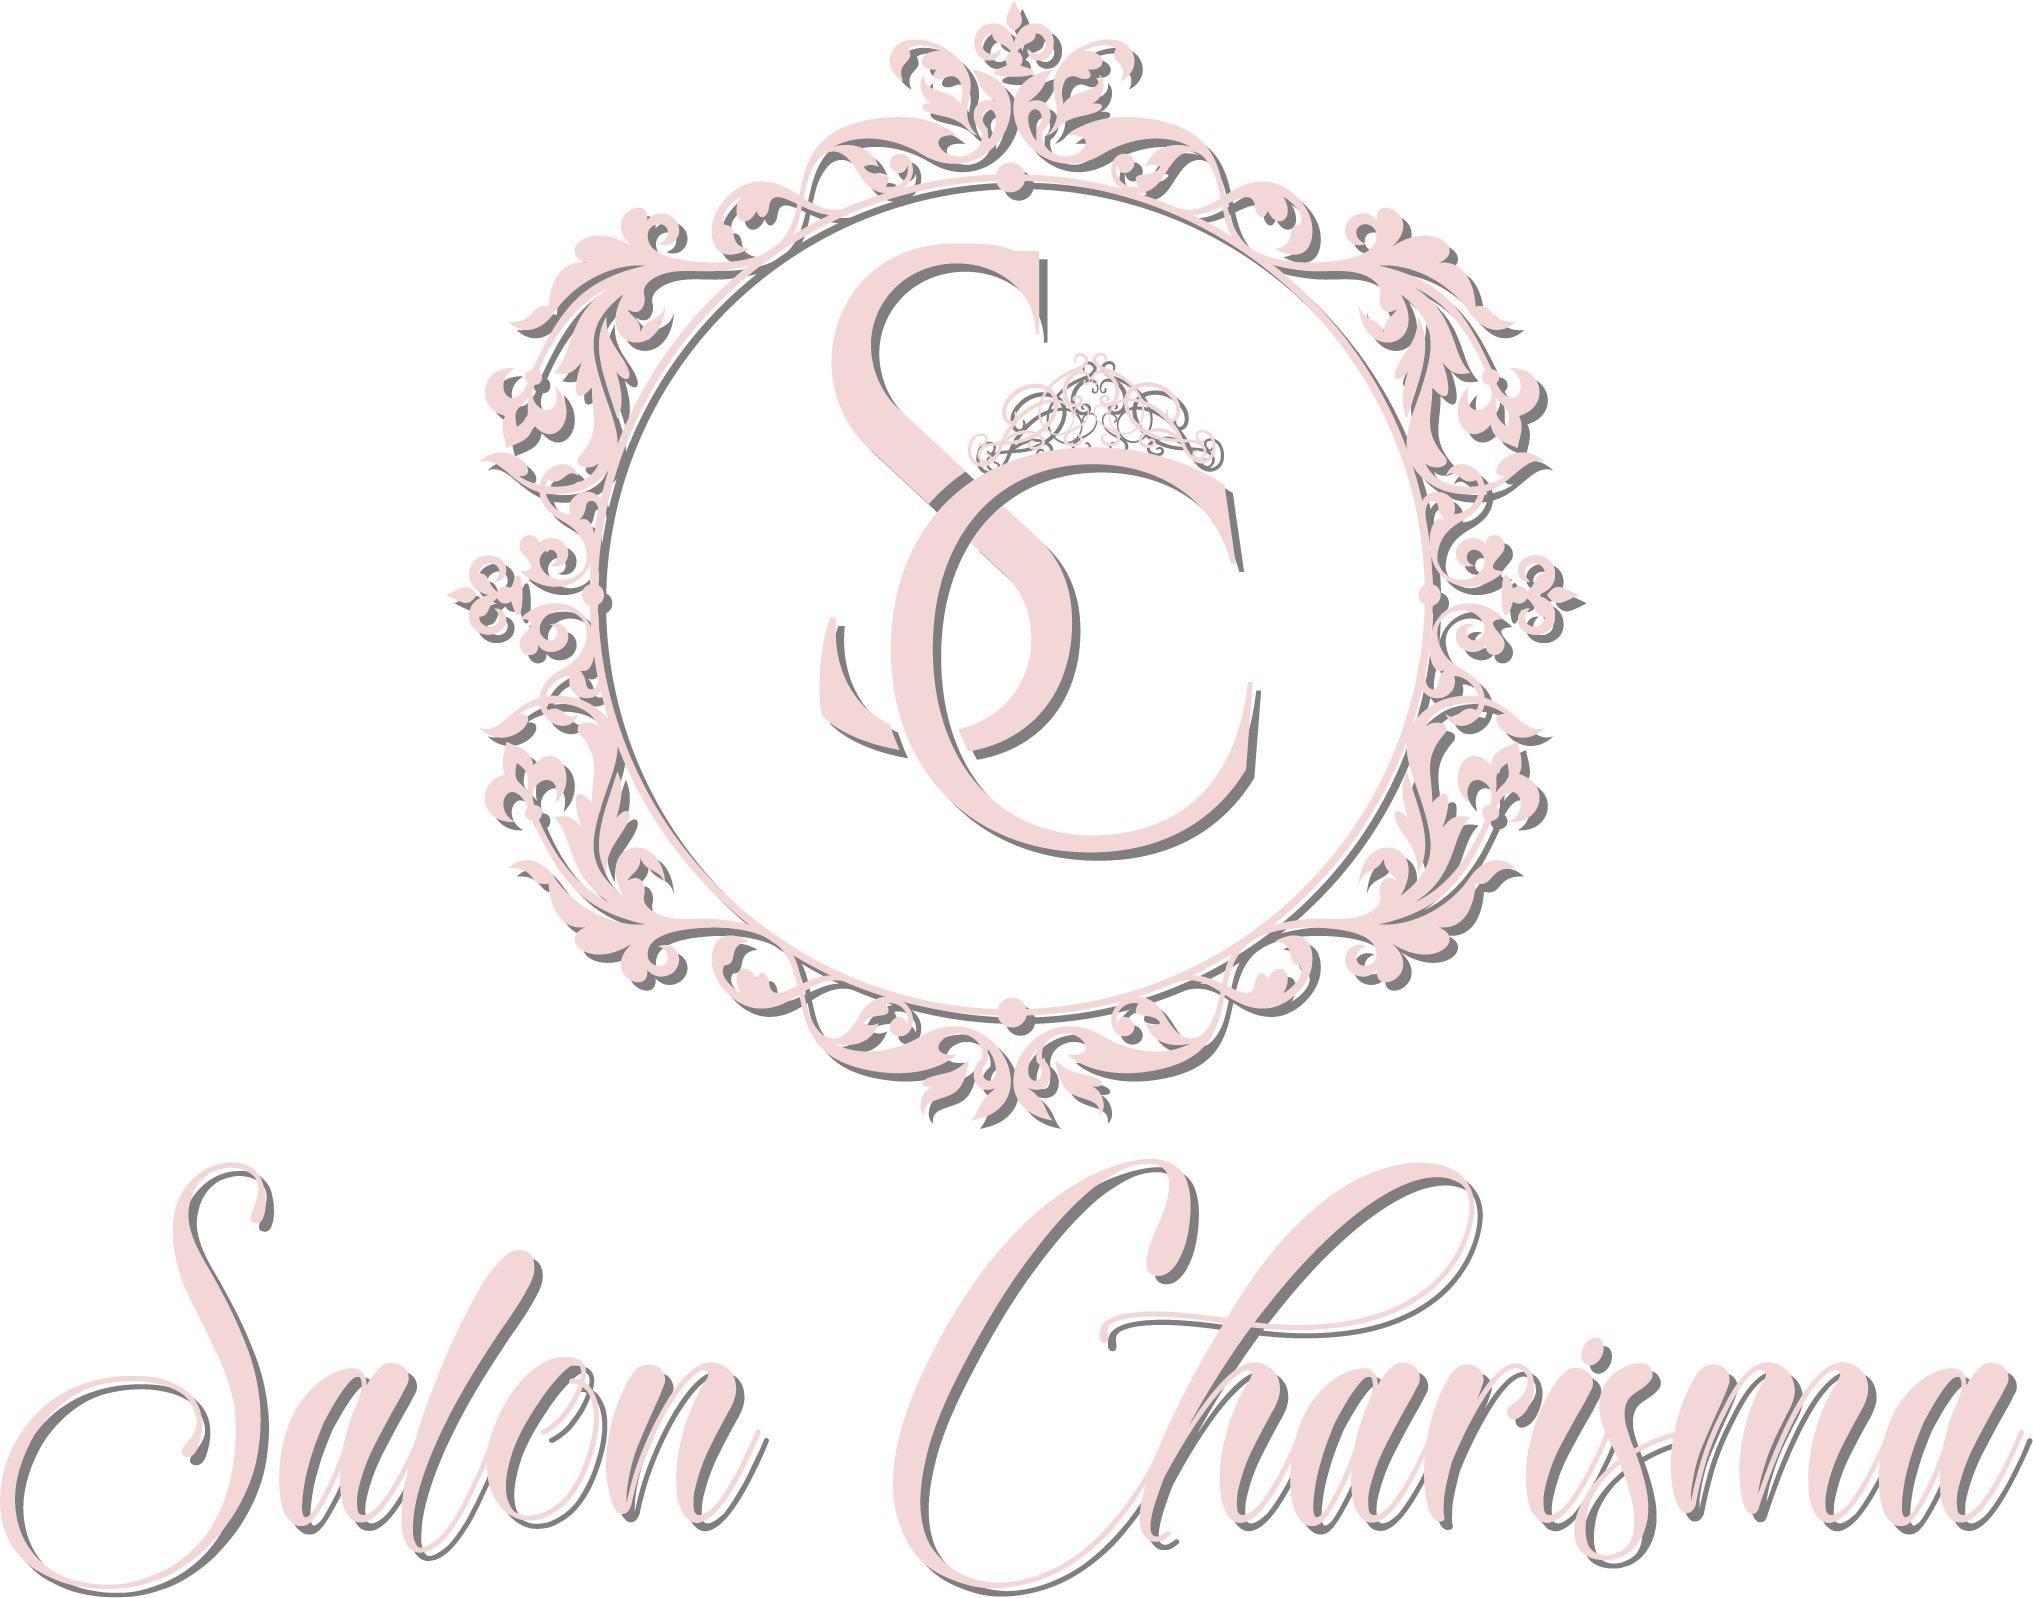 Salon Charisma  Logo